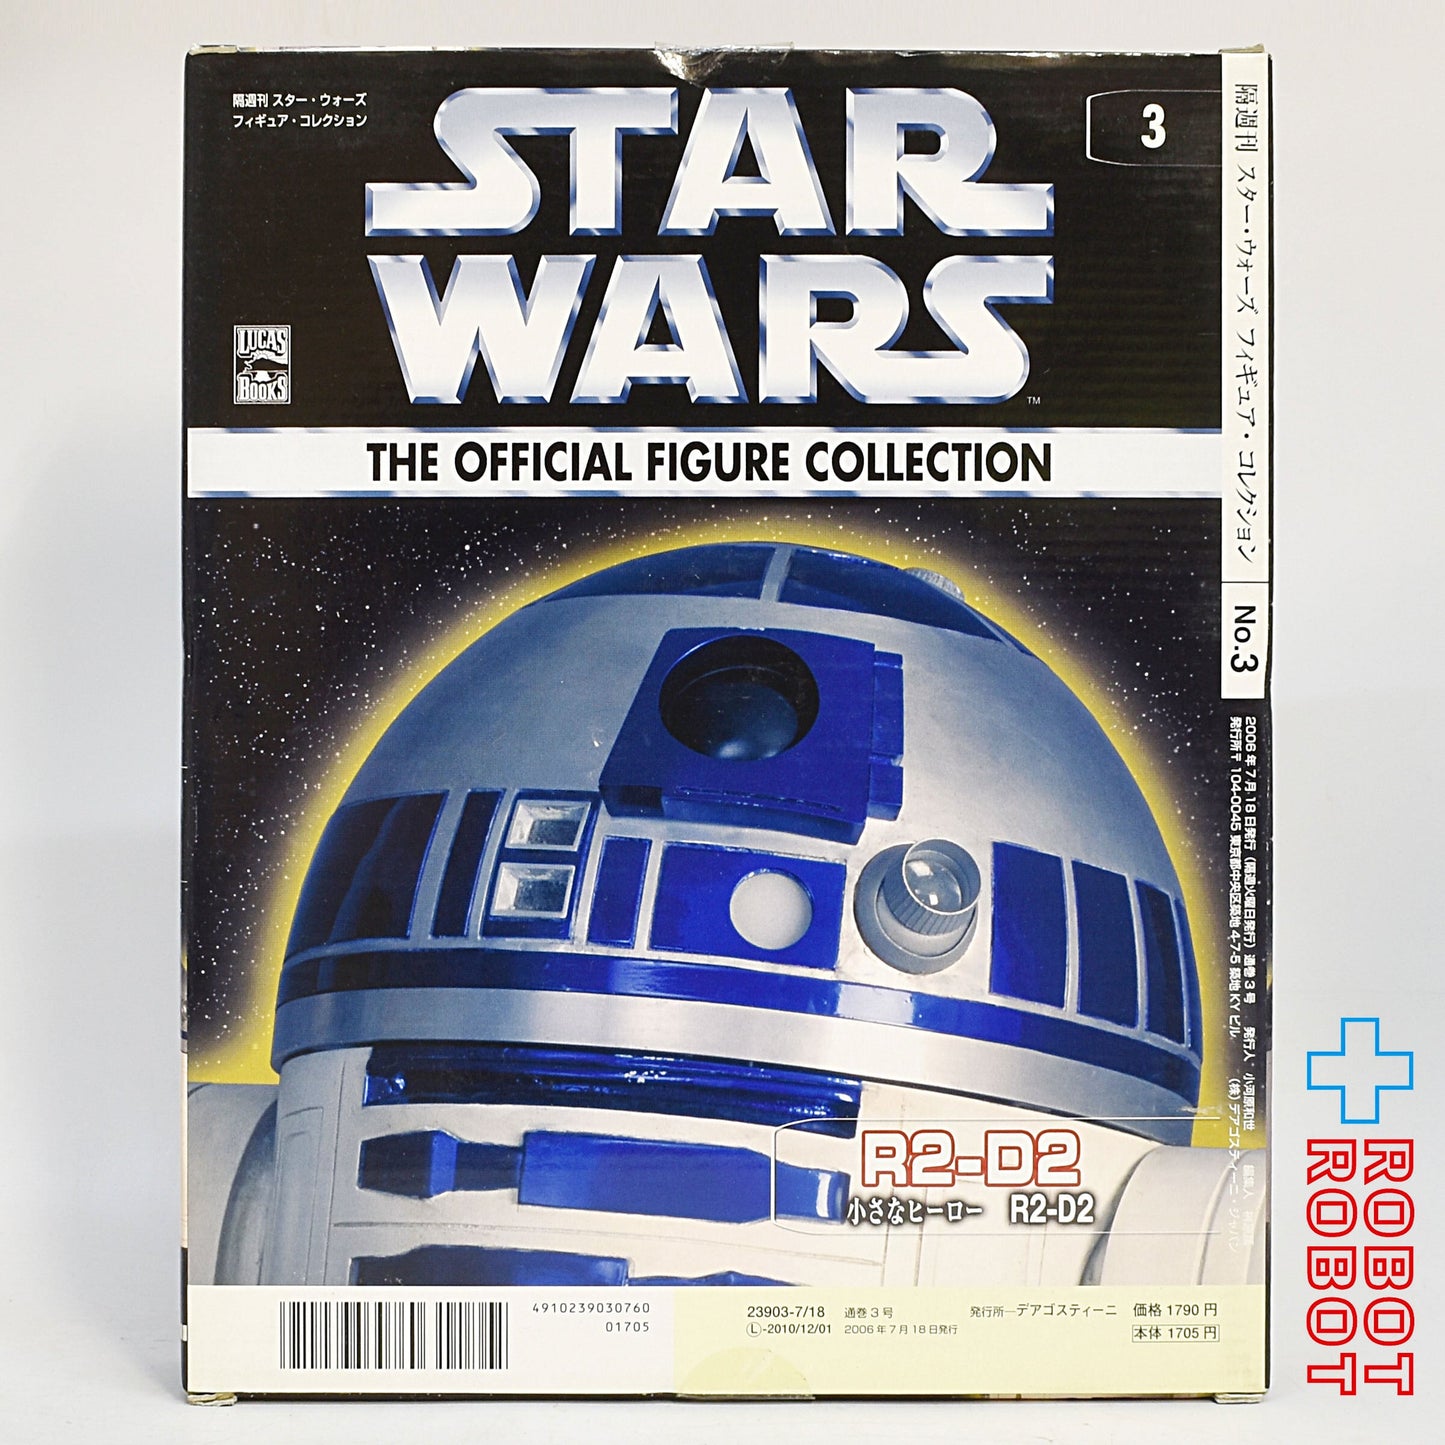 ディアゴスティーニ スター・ウォーズ オフィシャルフィギュアコレクション #3 R2-D2